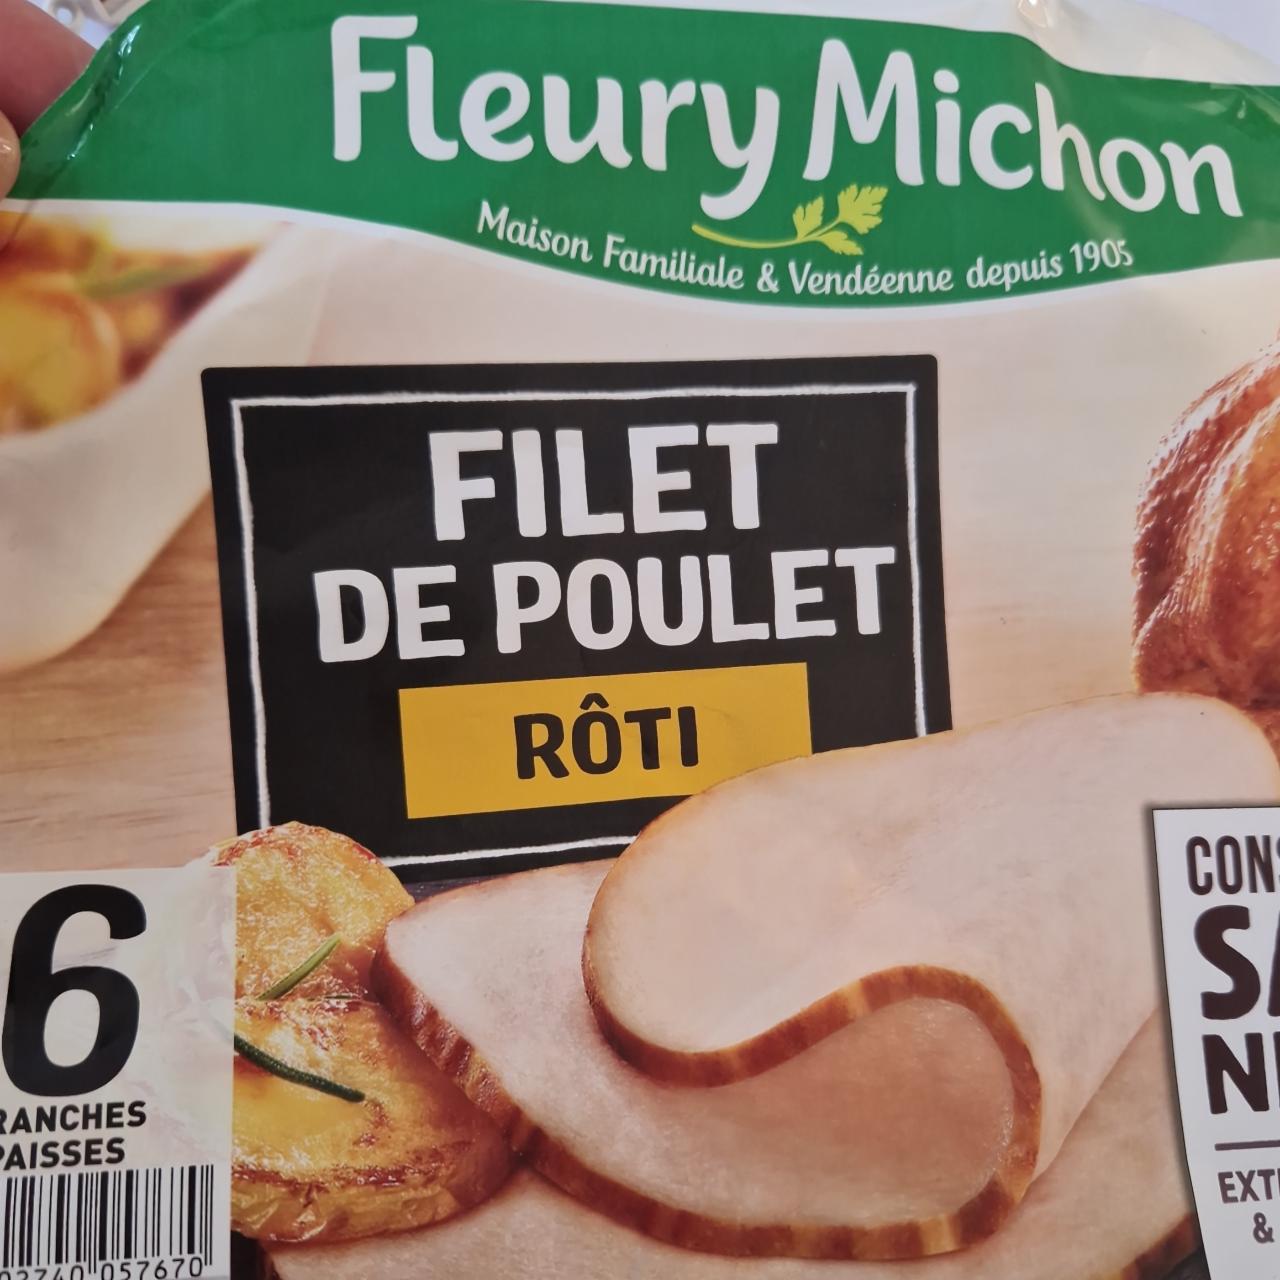 Fotografie - Filet de Poulet rôti Fleury Michon